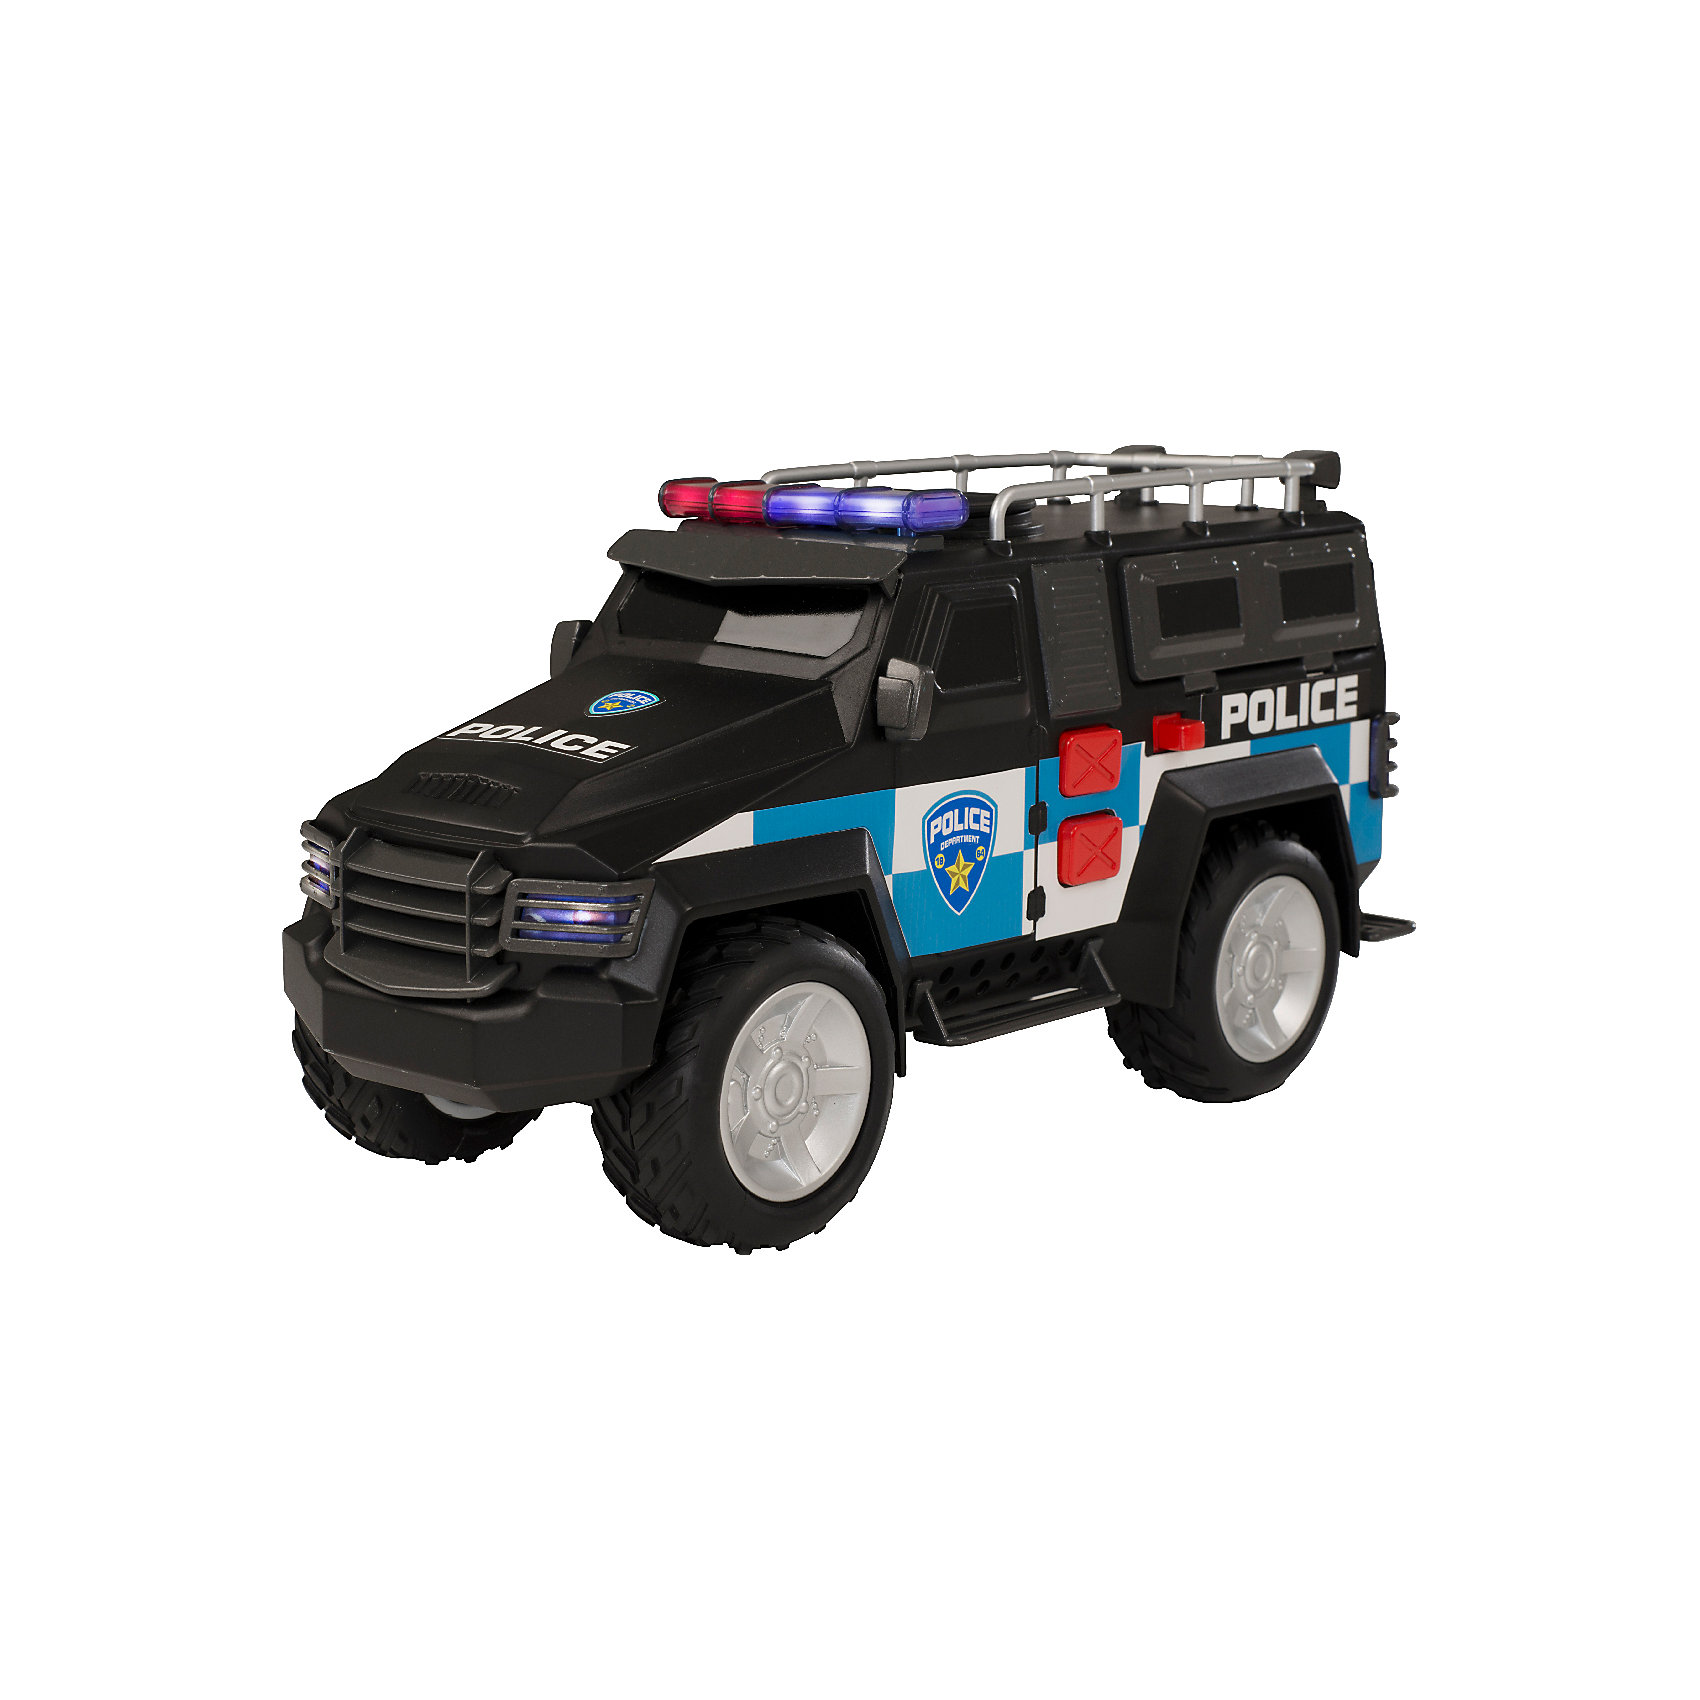 Машинка Roadsterz Полицейский внедорожник 4х4 HTI 15654339